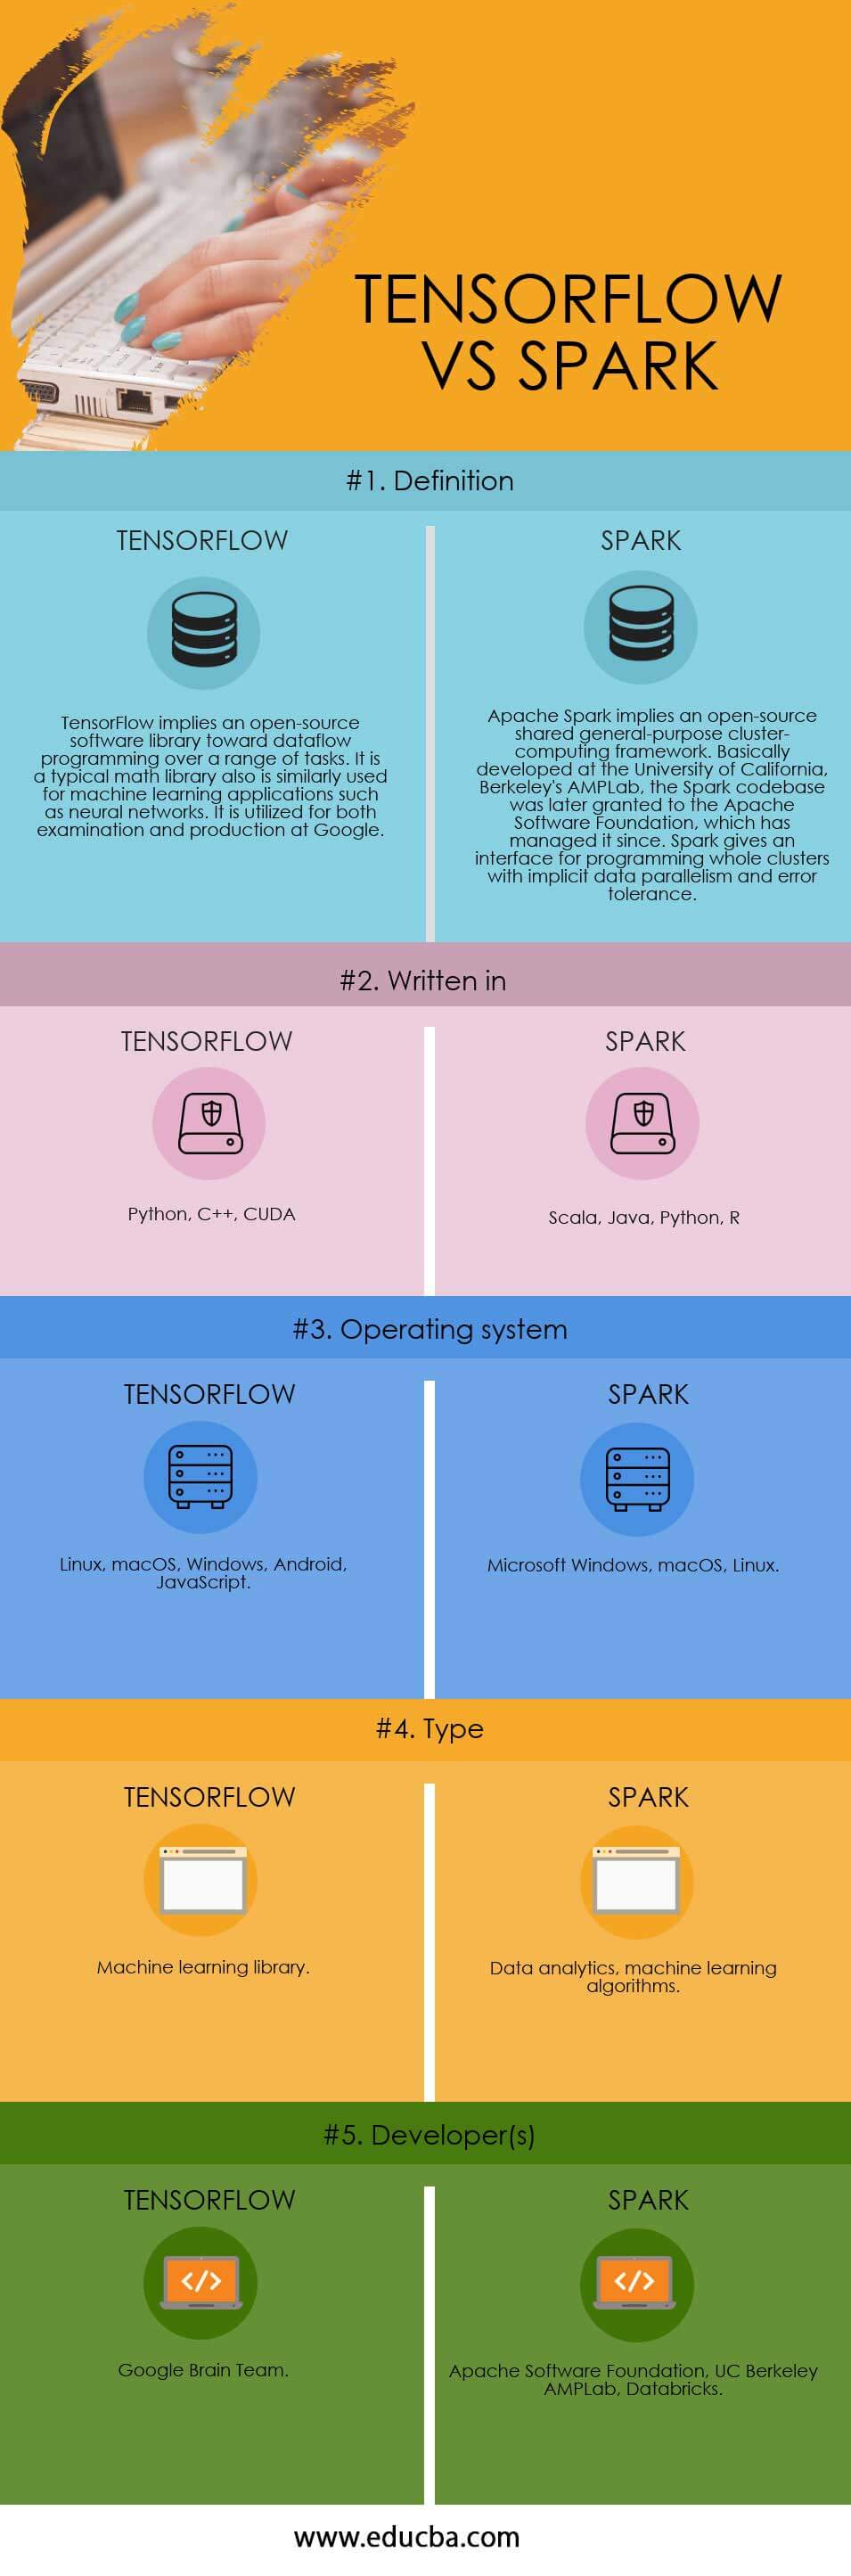 TENSORFLOW-vs-SPARK info